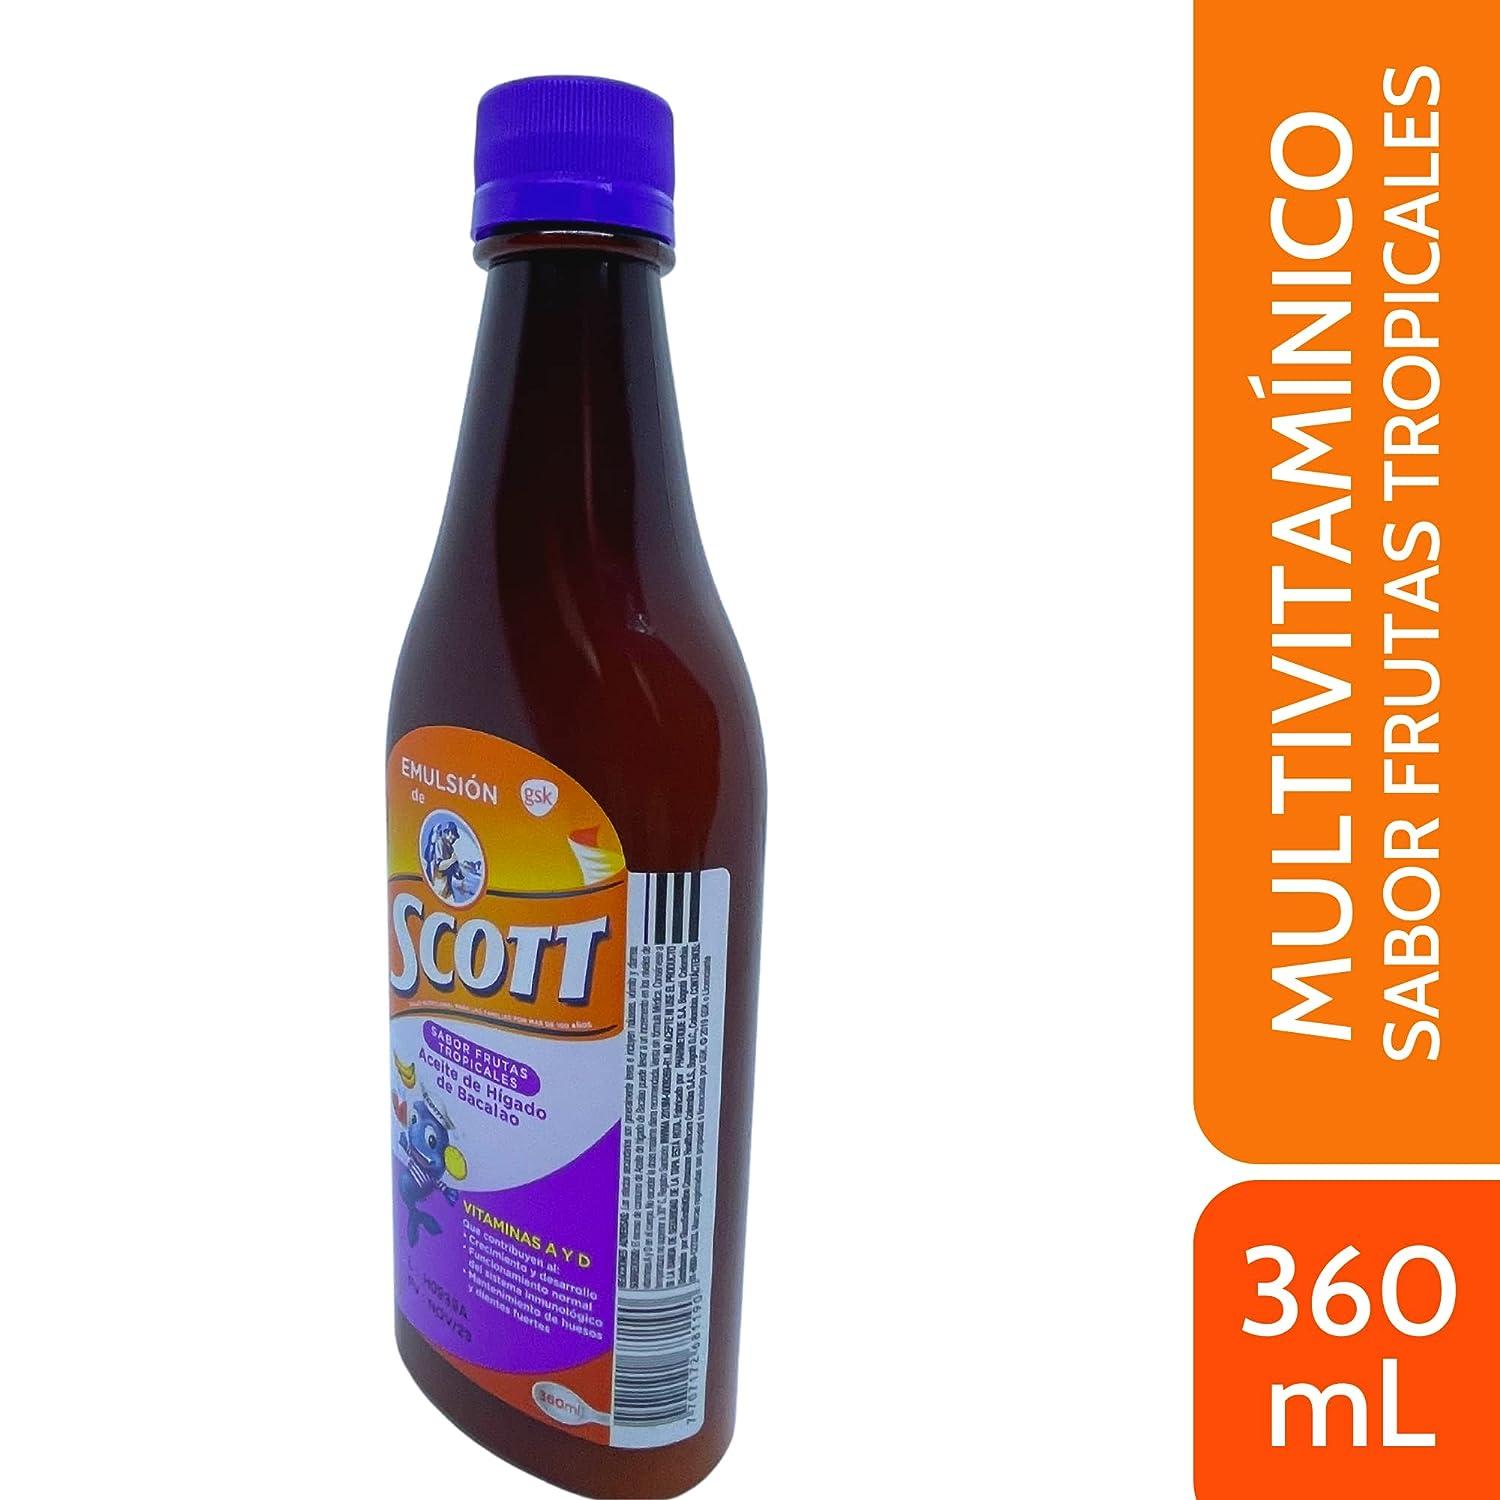 Emulsion de Scott Frutas Tropicales (tropical fruit) (360 ml) 12